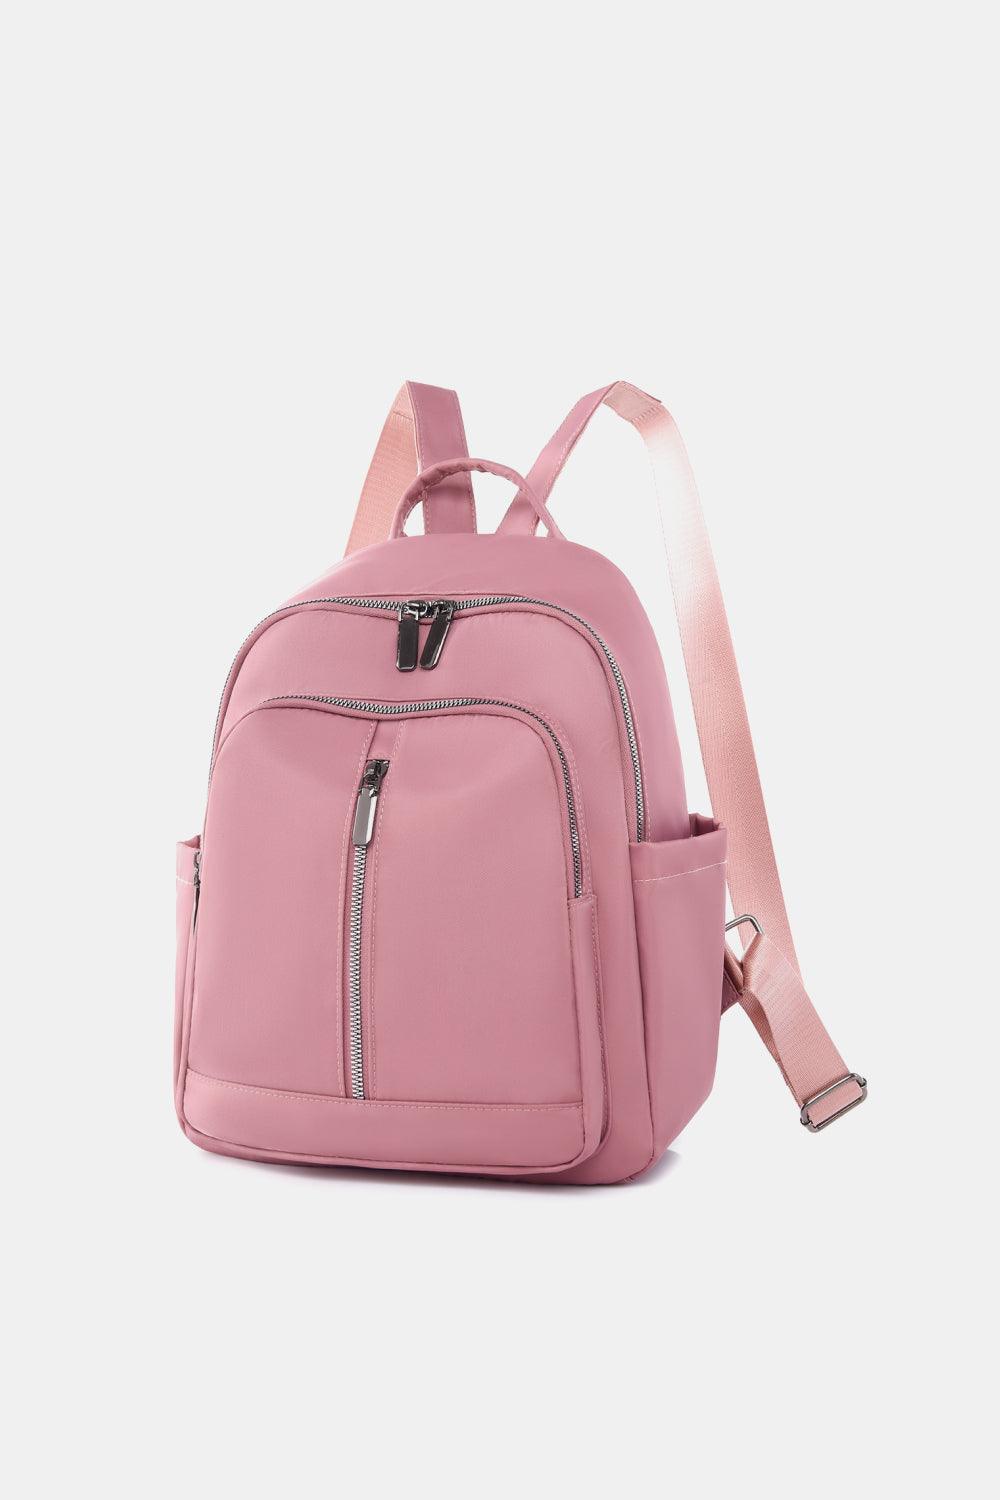 Medium Nylon Backpack - Lab Fashion, Home & Health